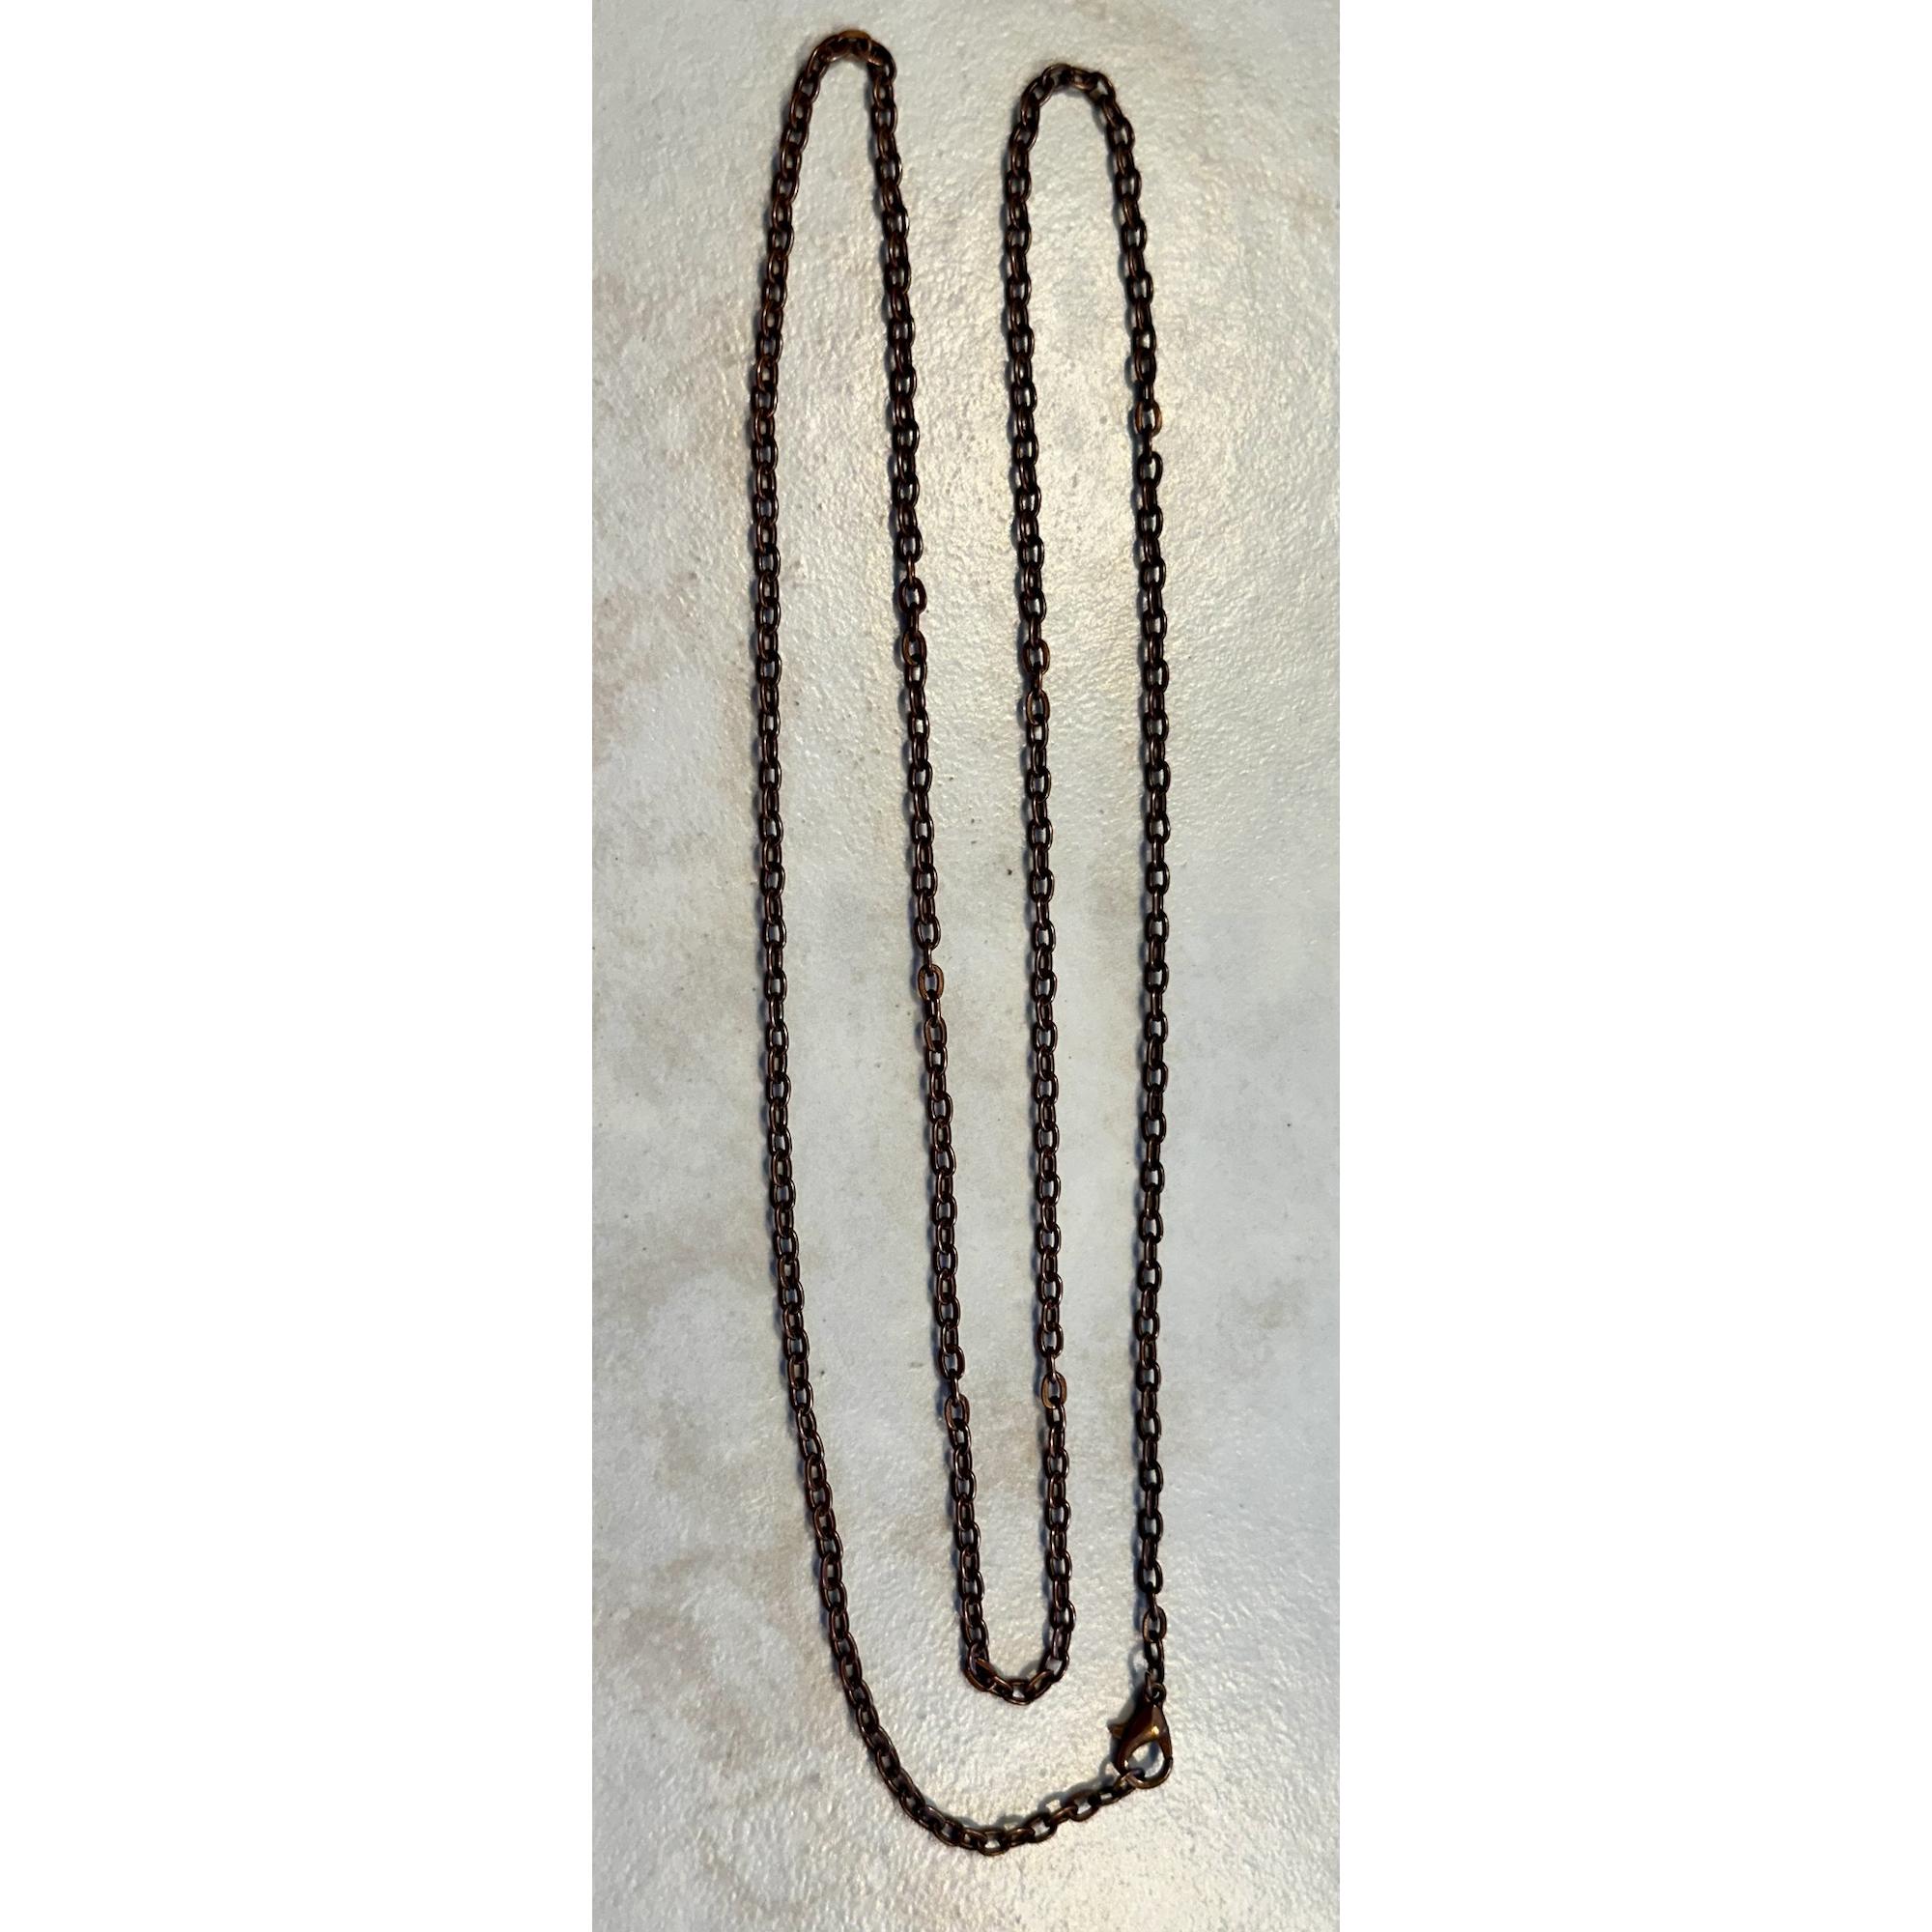 Megalodon Pendant, blackened copper wire, Sharp serrations Prehistoric Online